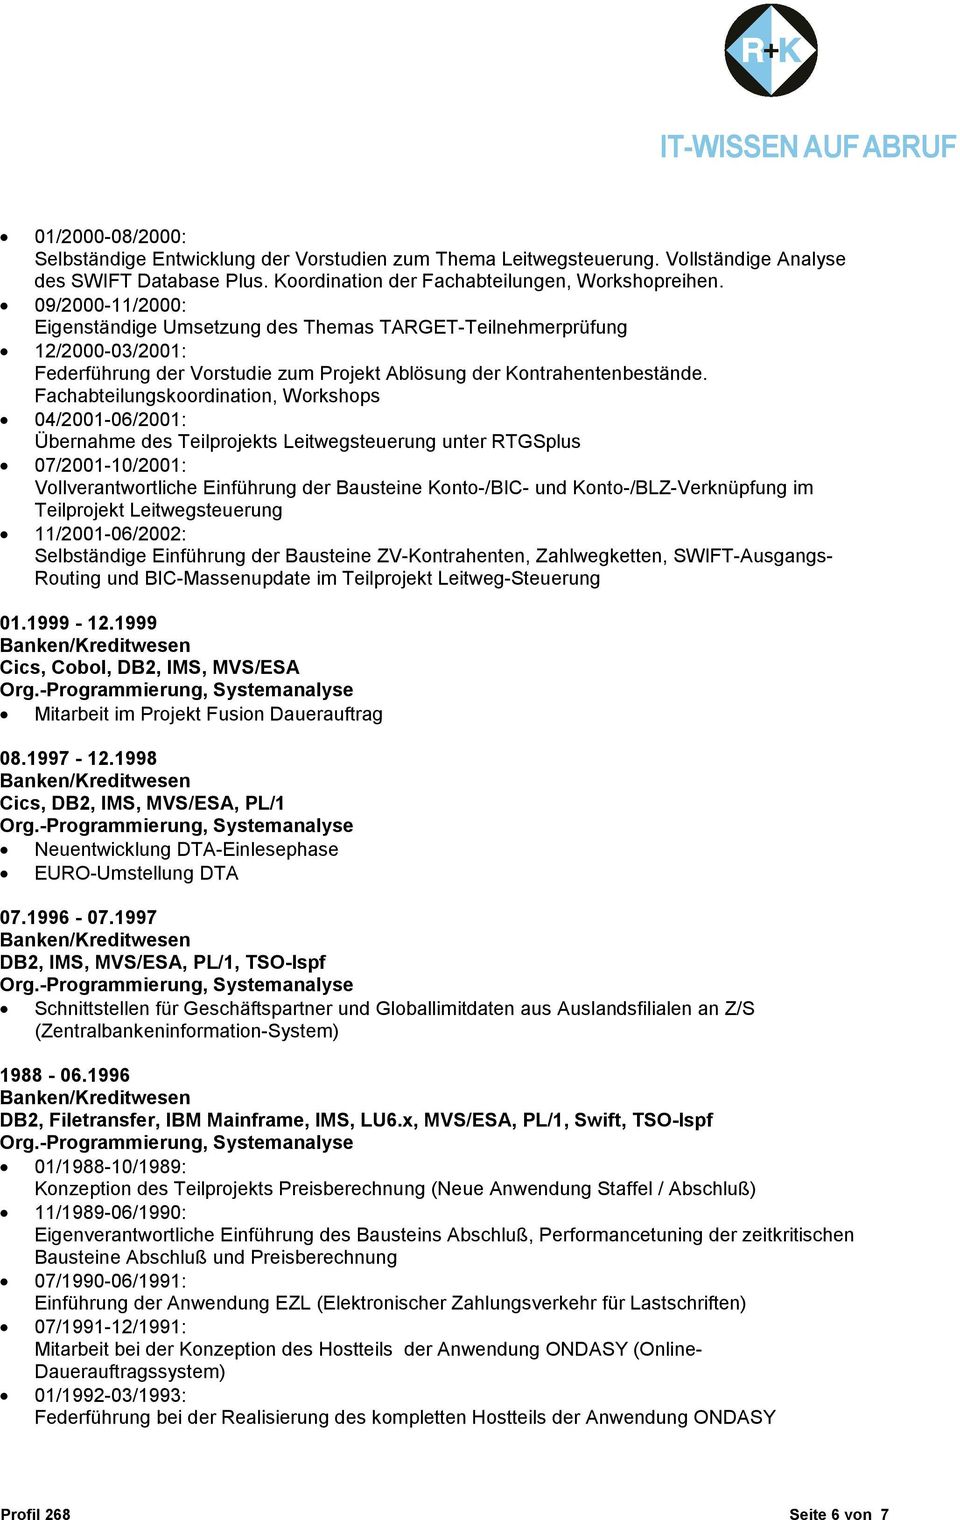 Fachabteilungskoordination, Workshops 04/2001-06/2001: Übernahme des Teilprojekts Leitwegsteuerung unter RTGSplus 07/2001-10/2001: Vollverantwortliche Einführung der Bausteine Konto-/BIC- und